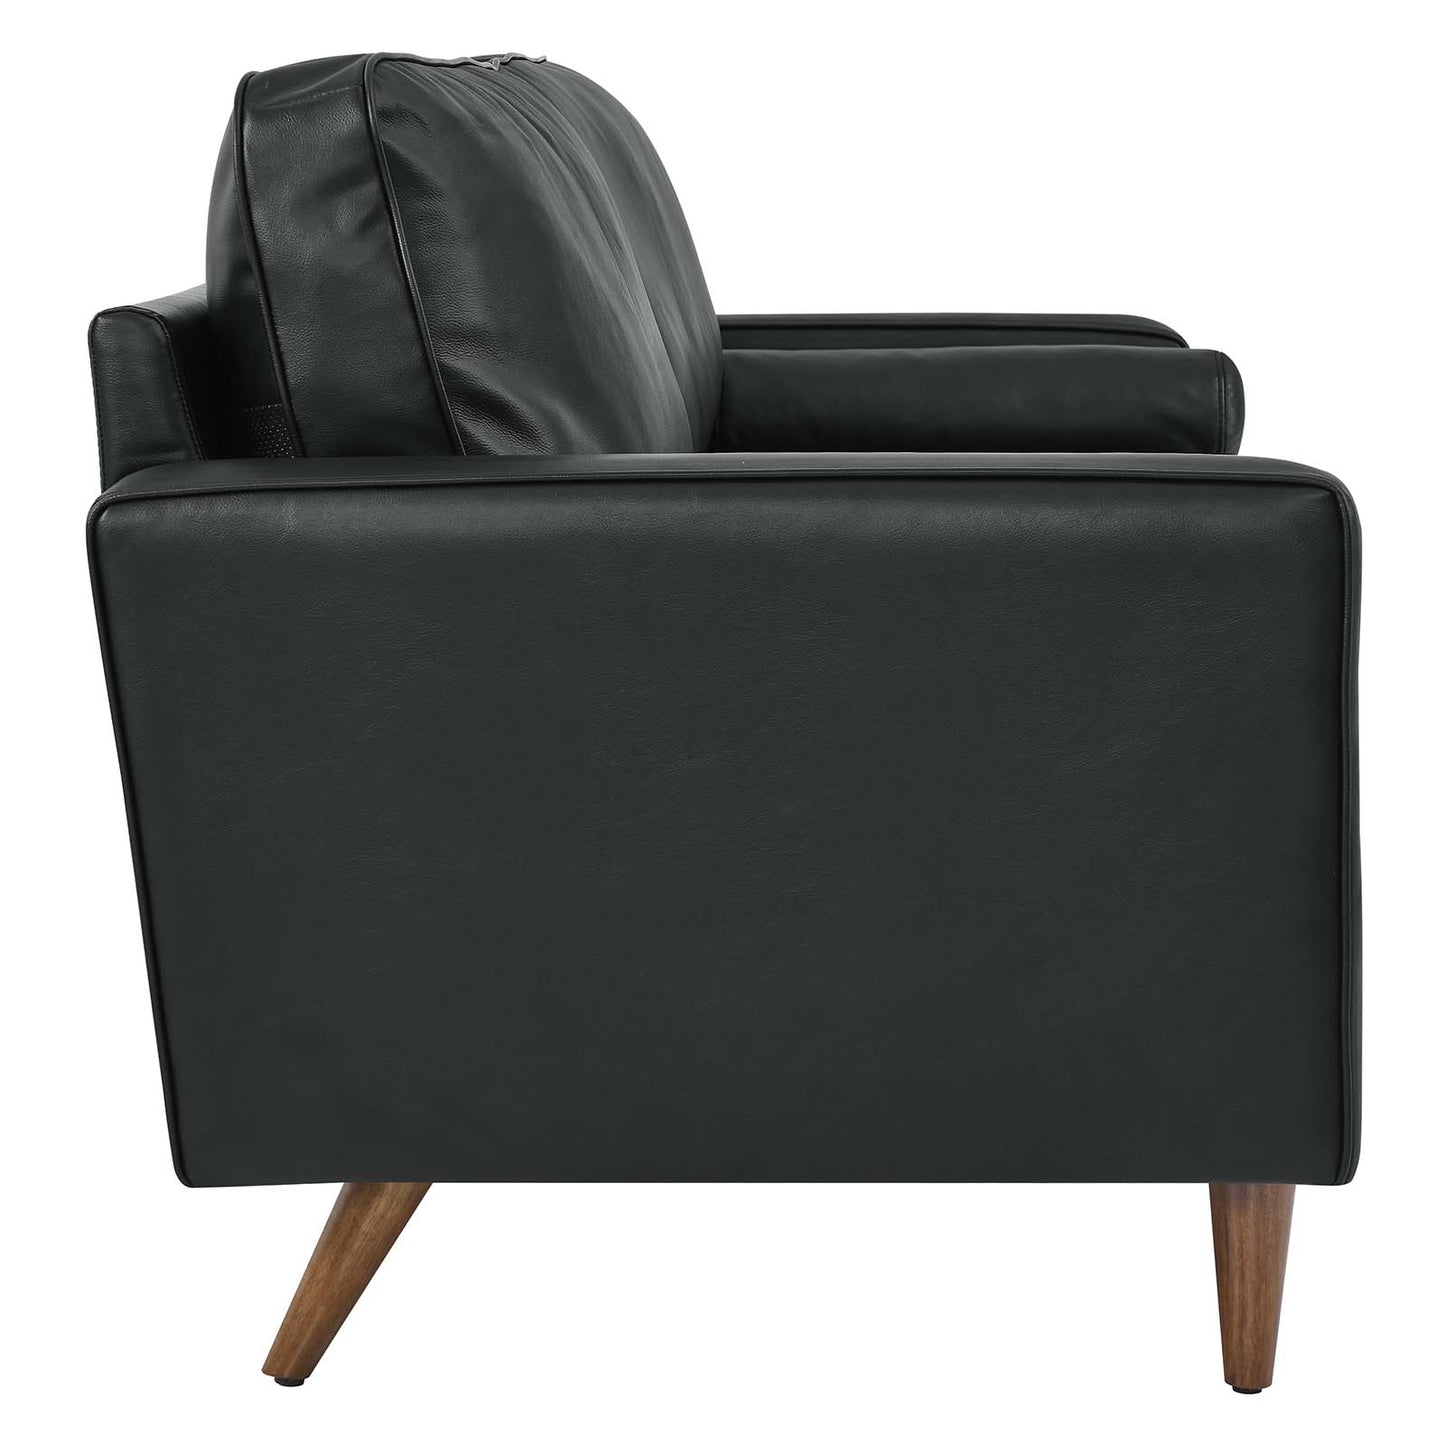 Valour 81" Leather Sofa Black EEI-4634-BLK